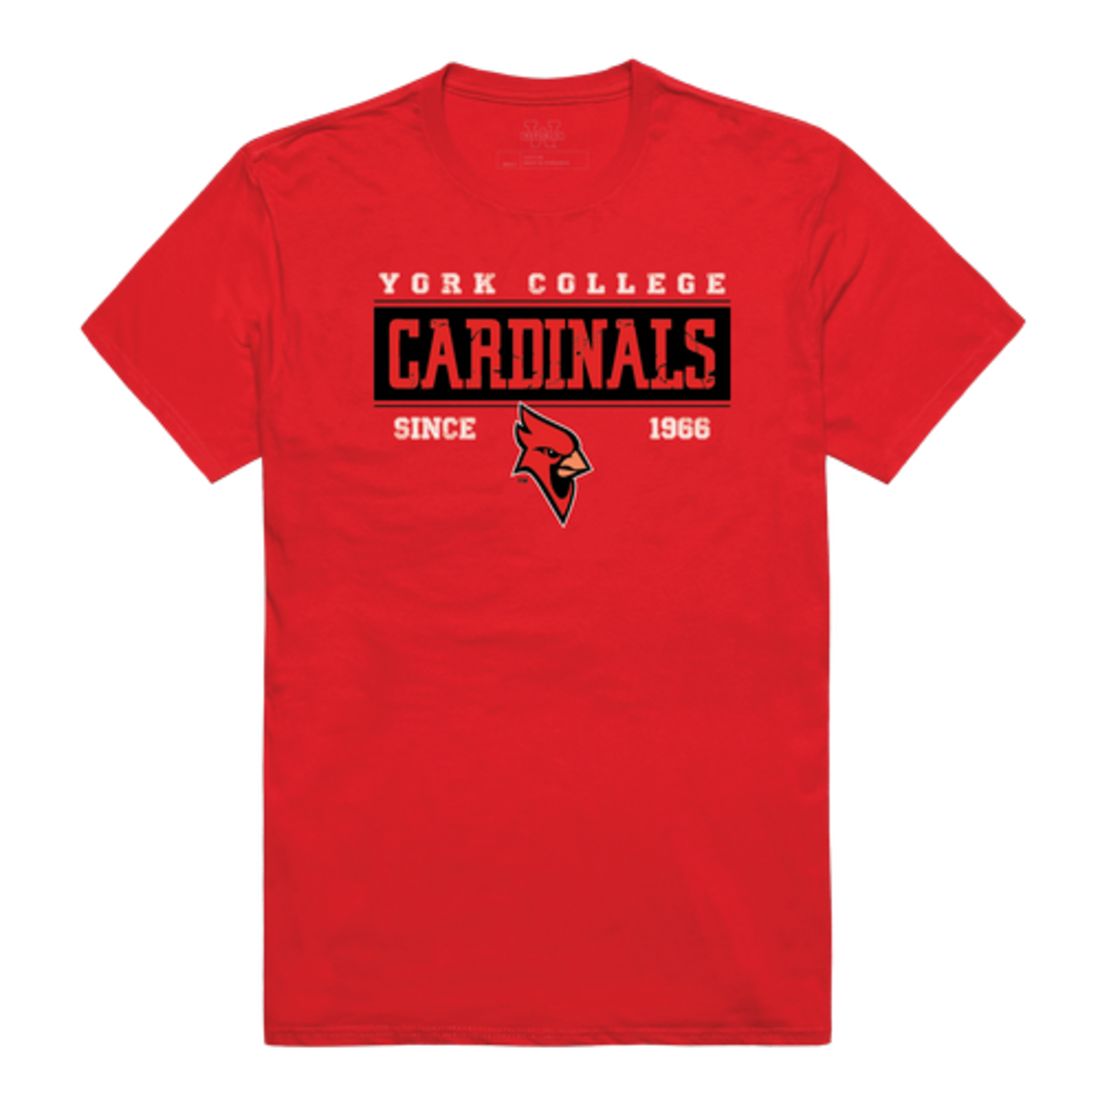 York College Cardinals Established T-Shirt